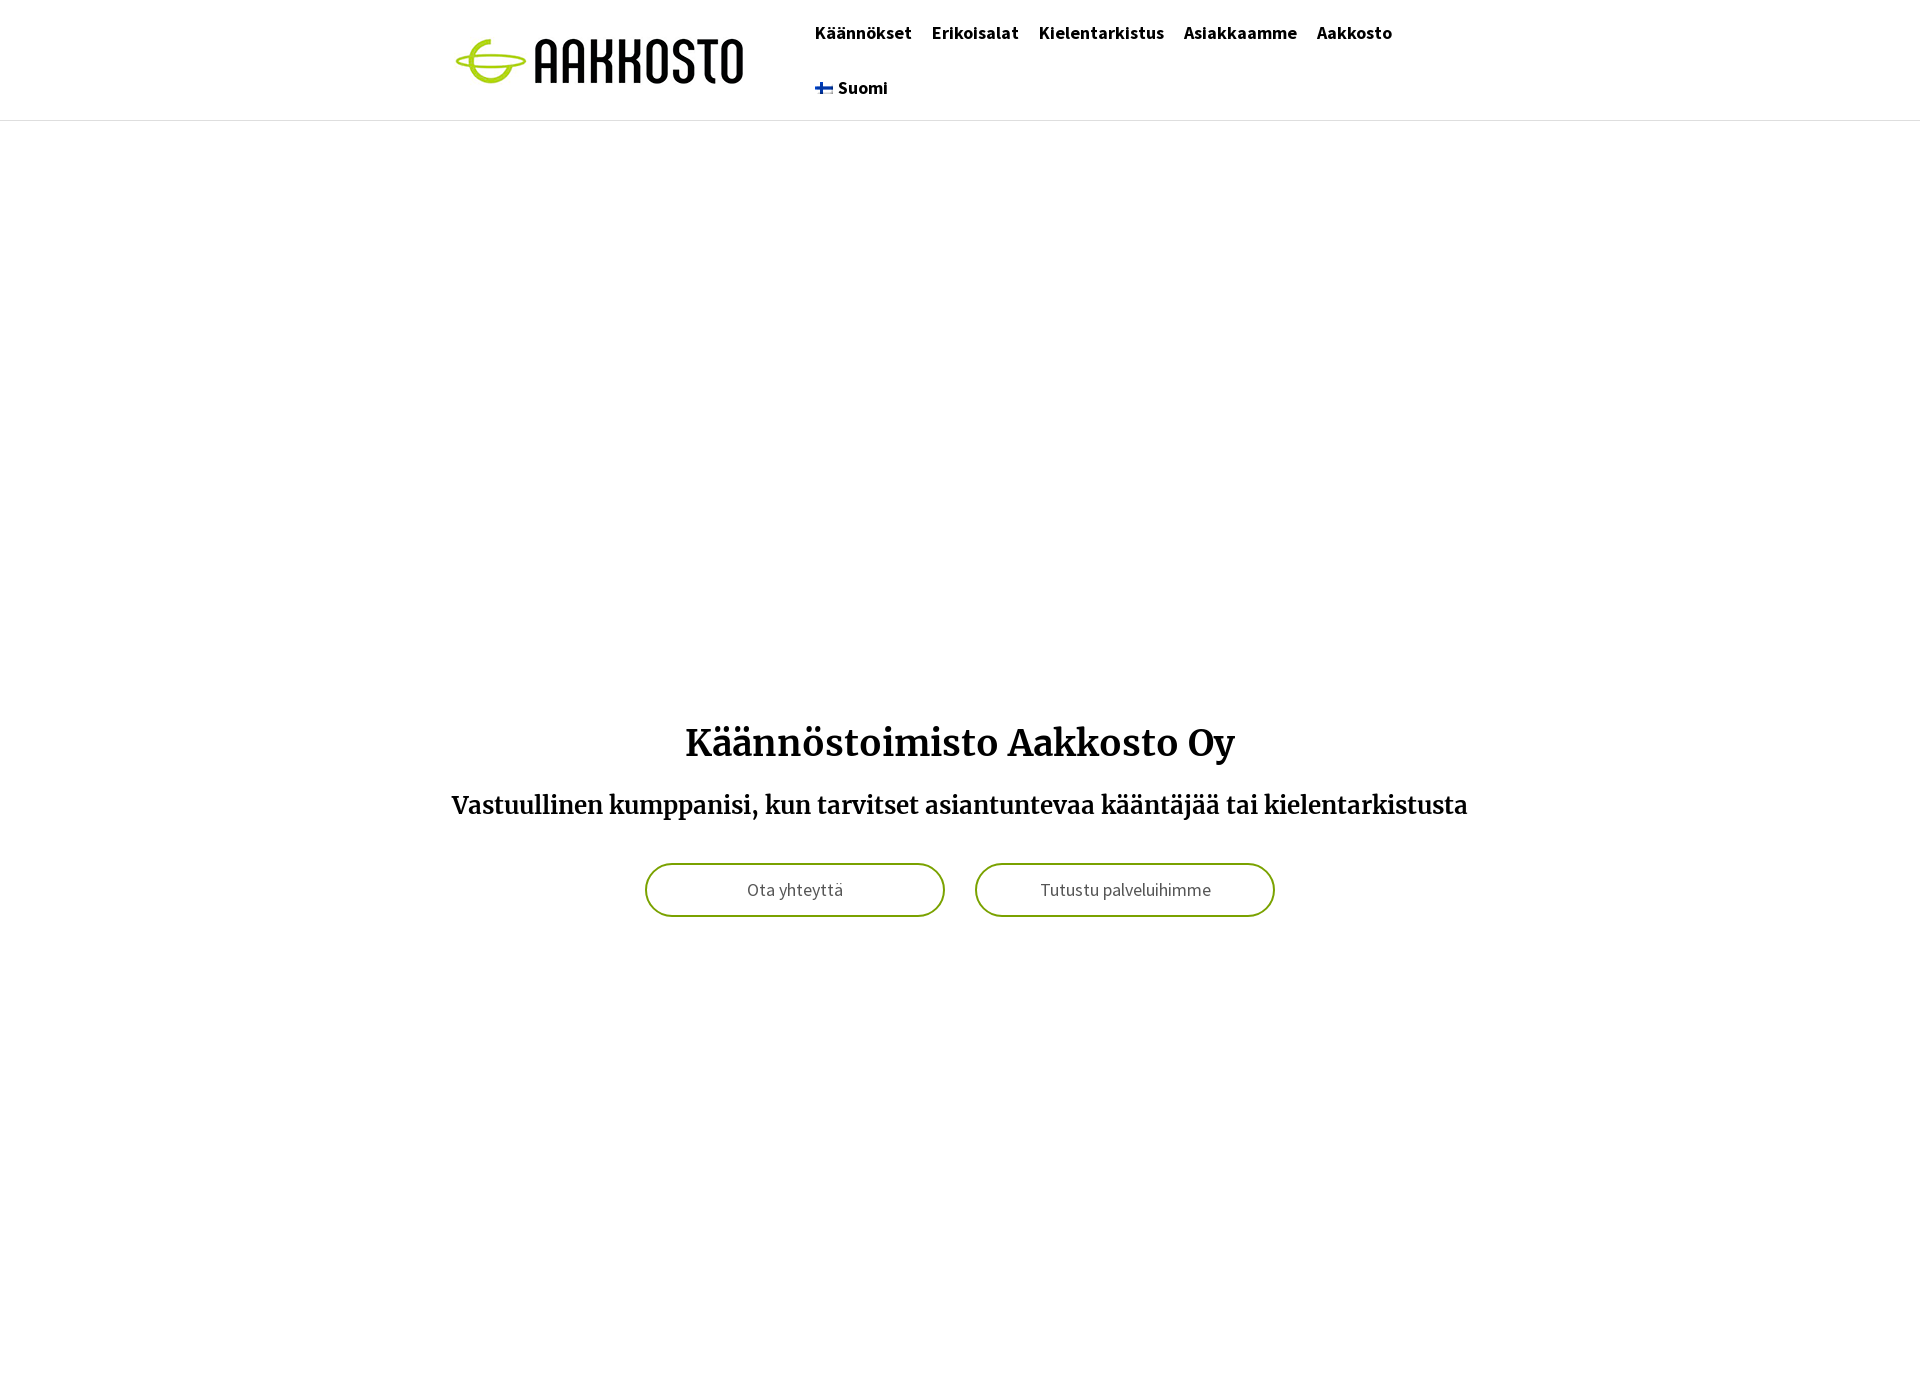 Skärmdump för aakkosto.fi